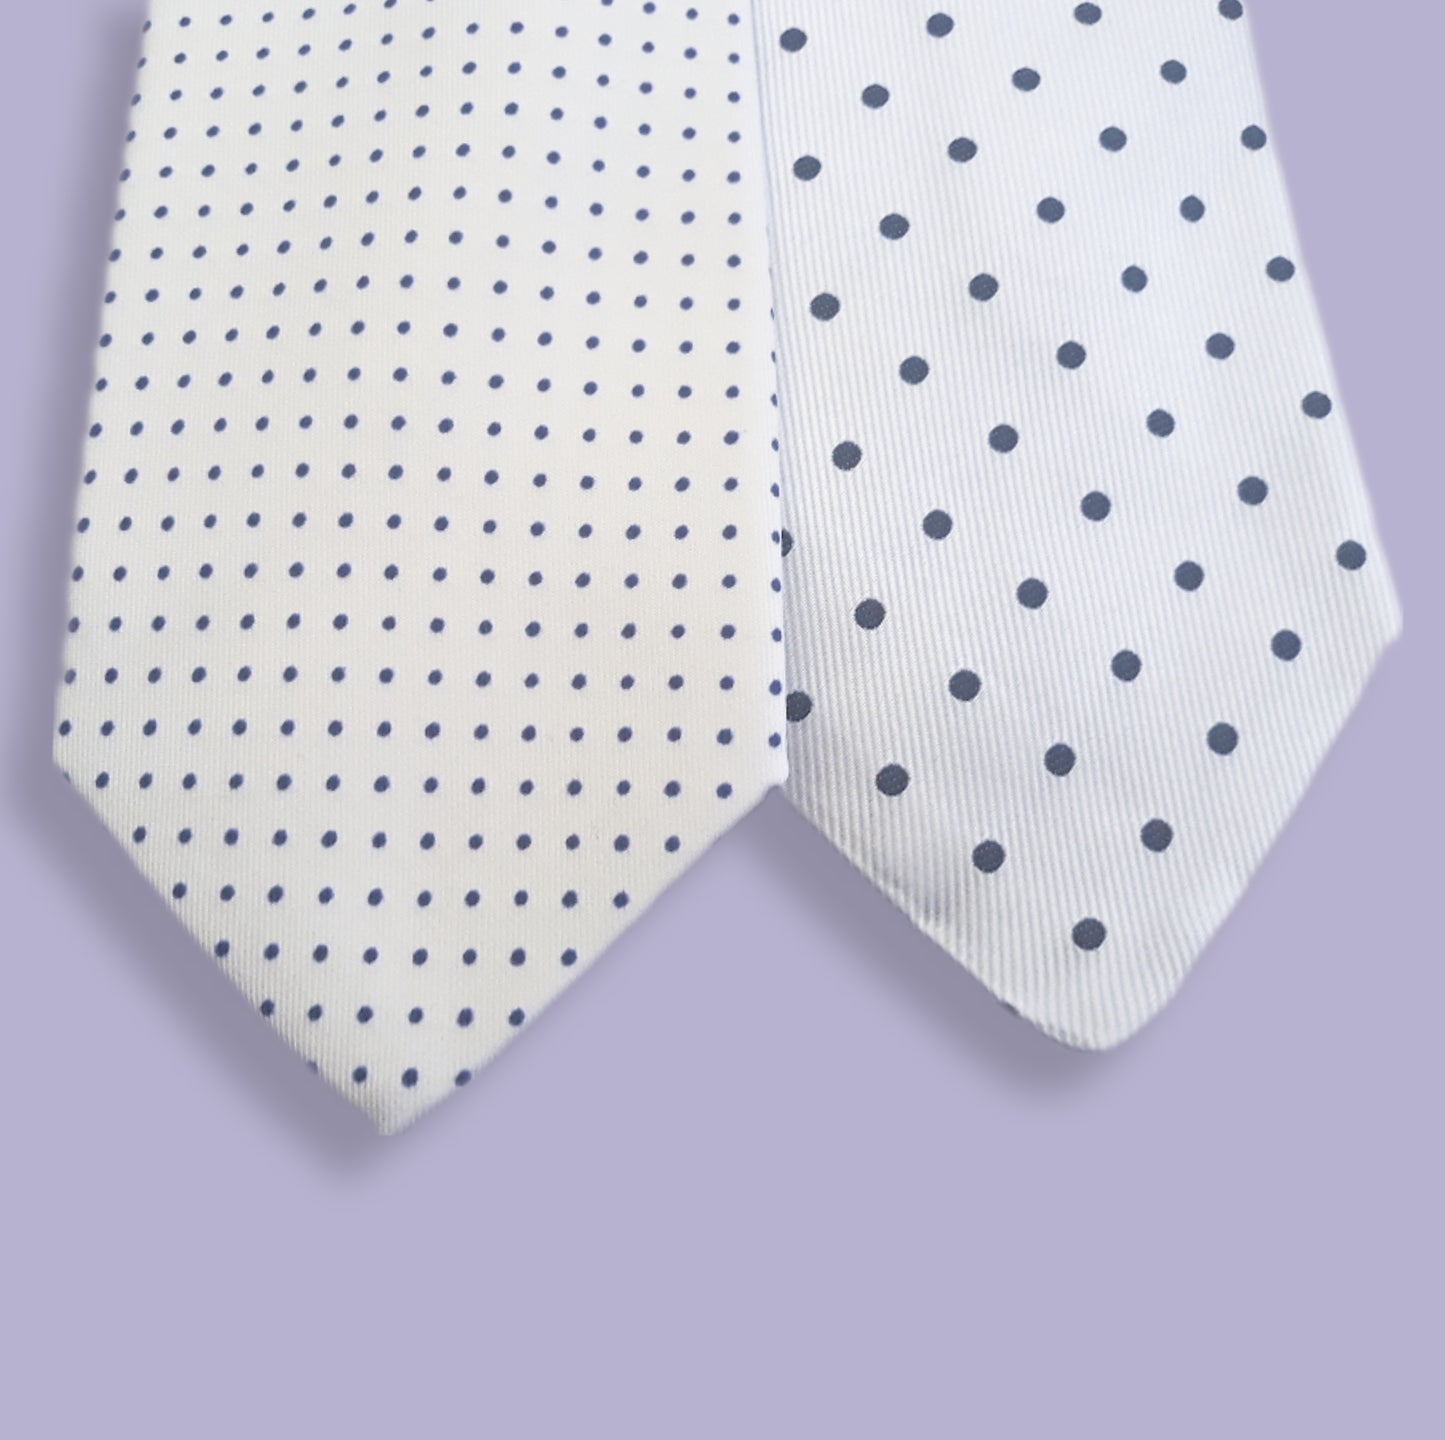 Cravatta bianca a pois nero 3 pieghe di pura seta fatta a mano